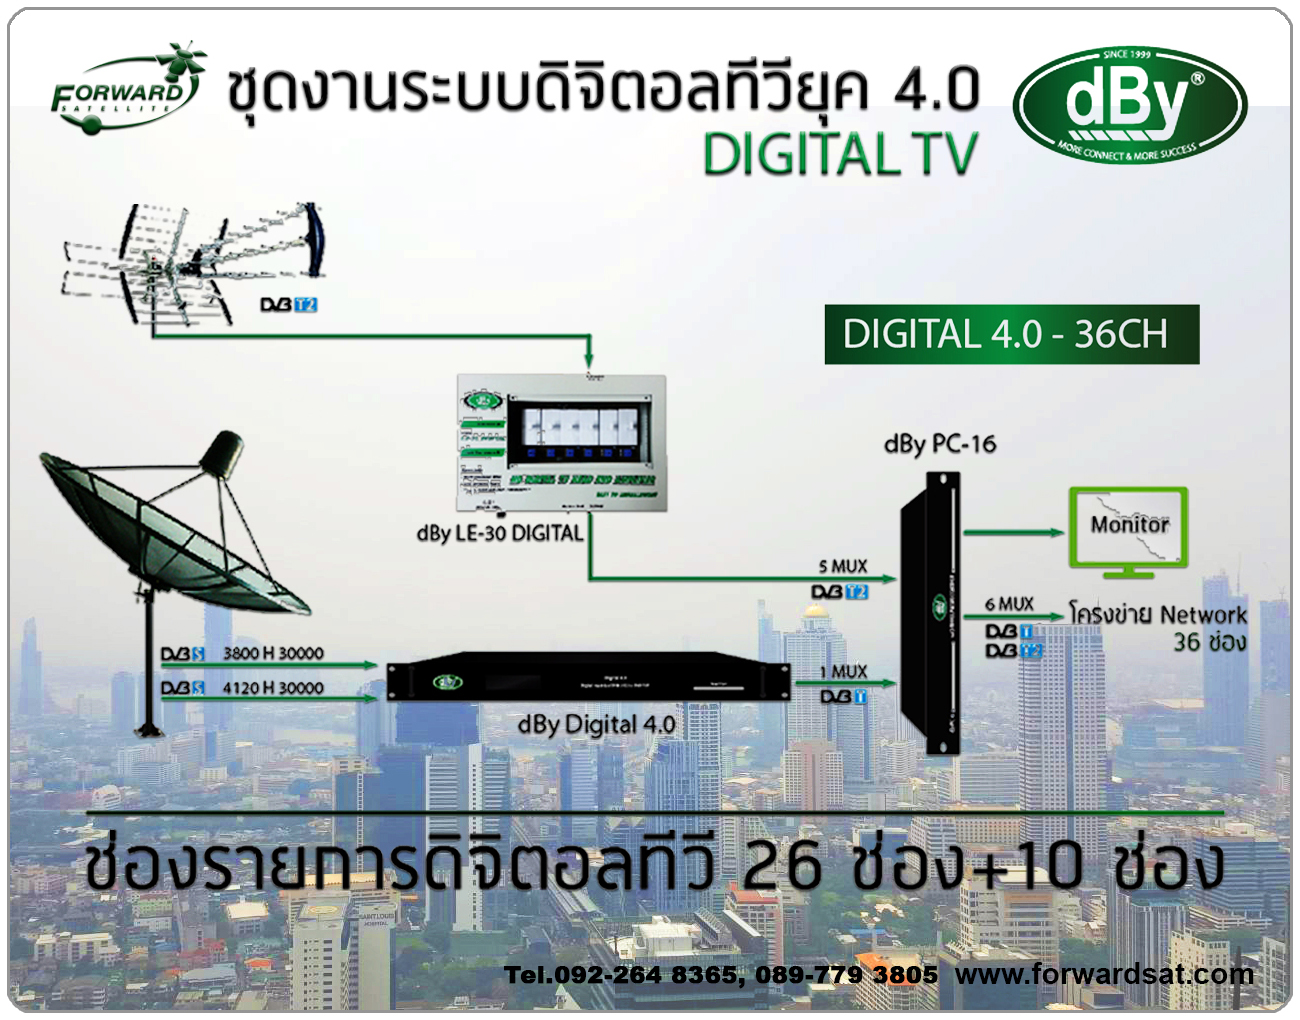 ชุดงานระบบทีวีรวม ดิจิตอลทีวียุค 4.0 dBY Head-End